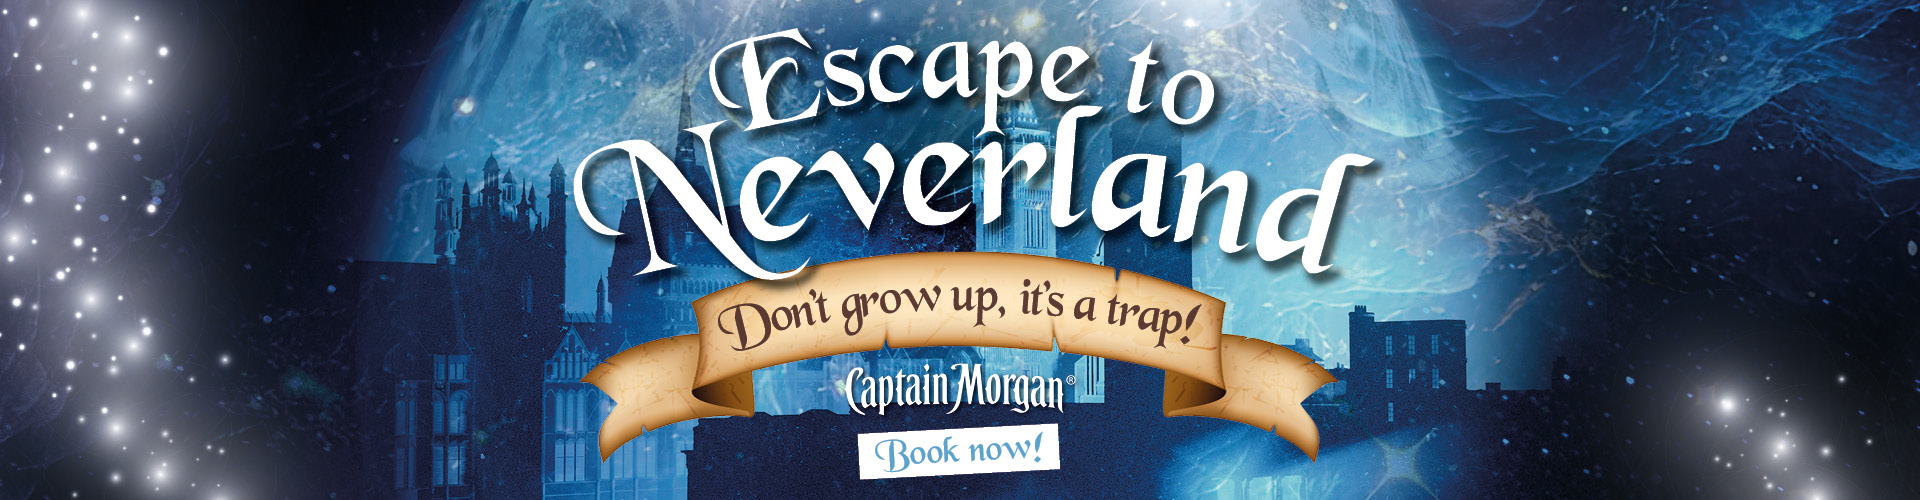 Escape to Neverland - NYE at Popworld